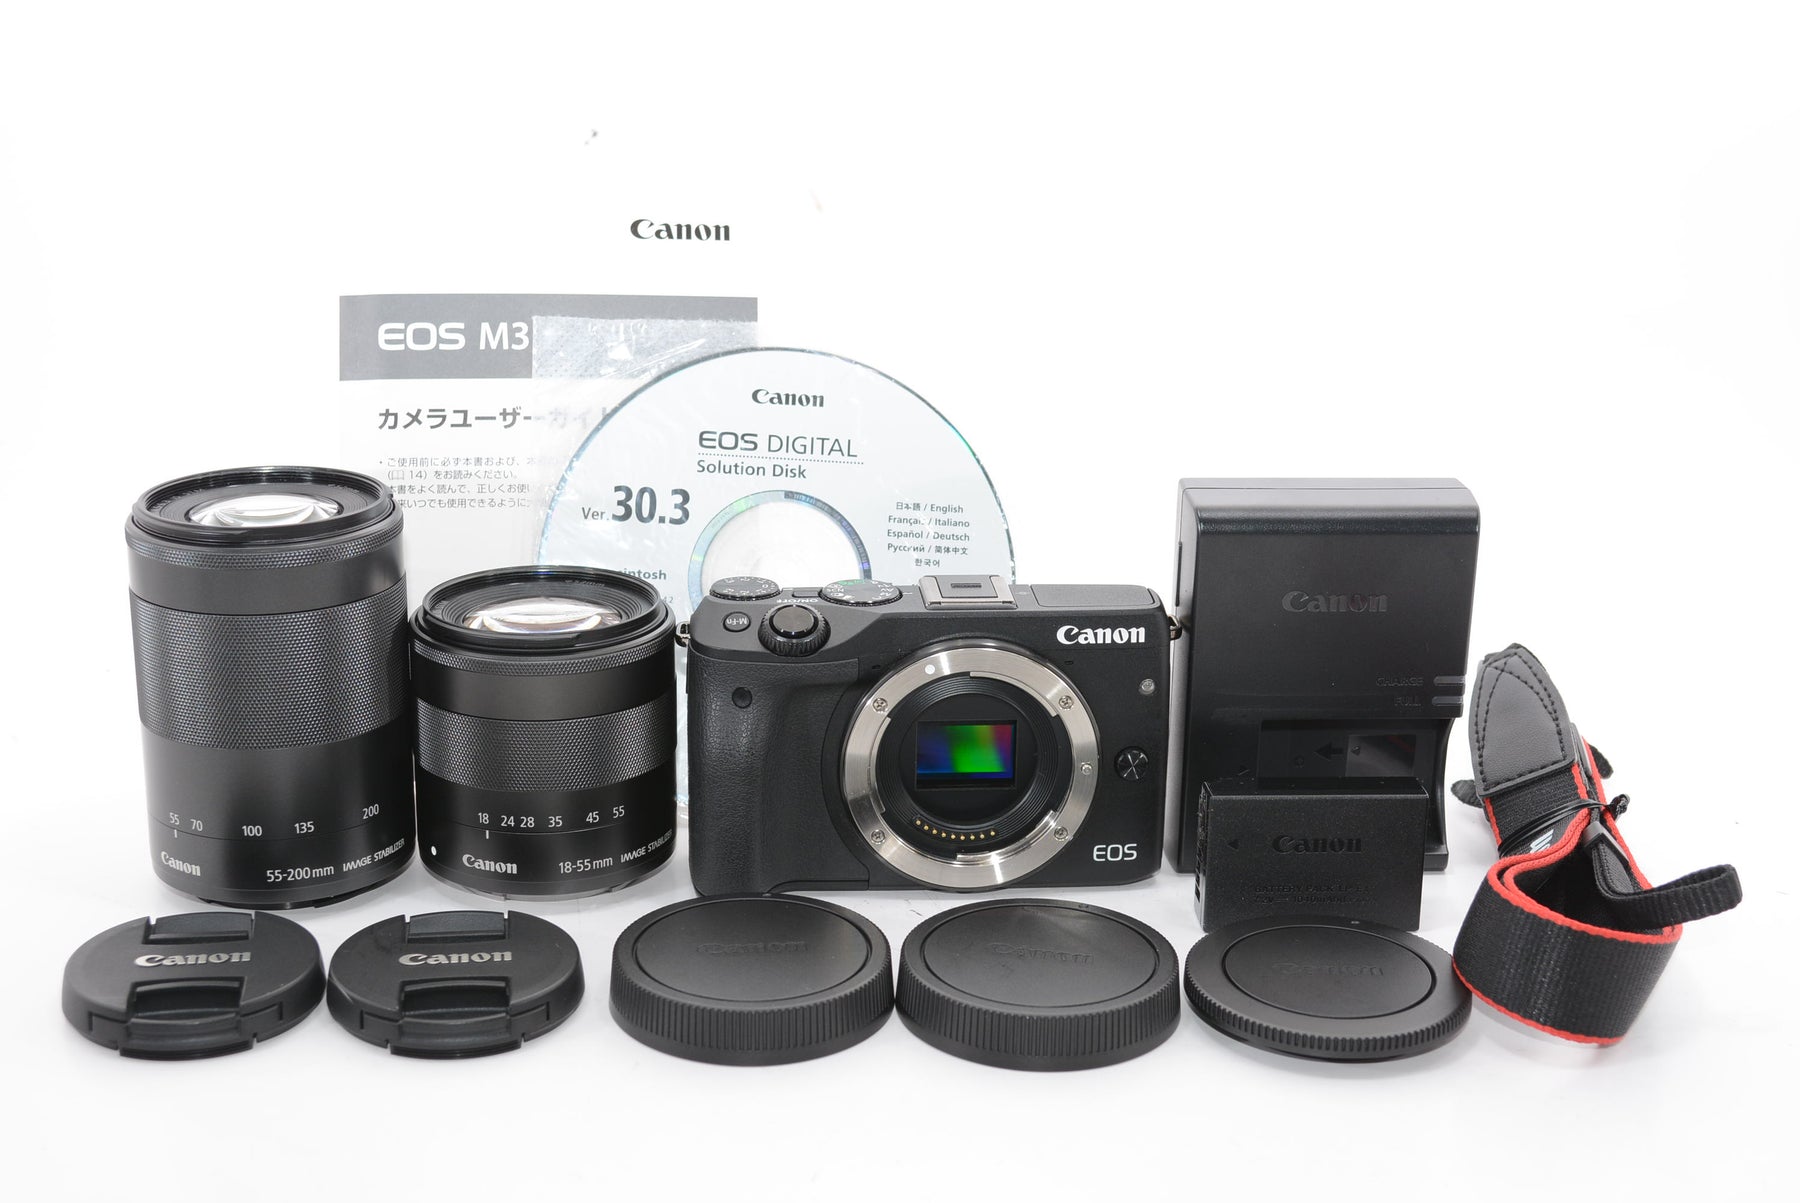 Canon EOS M3 ダブルズームレンズキット - デジタルカメラ